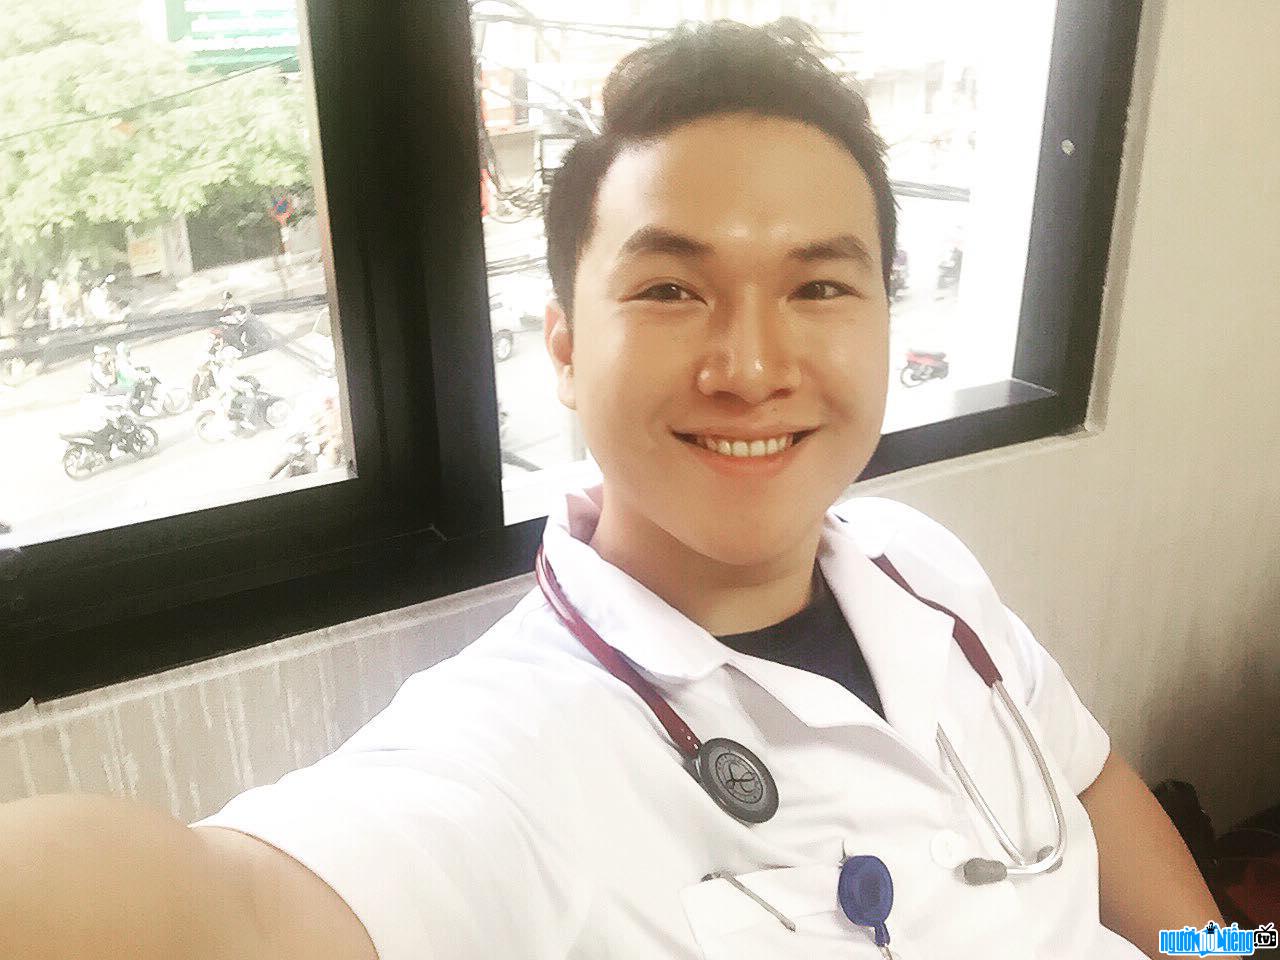 Bác sĩ Dương Minh Tuấn điển trai năng động